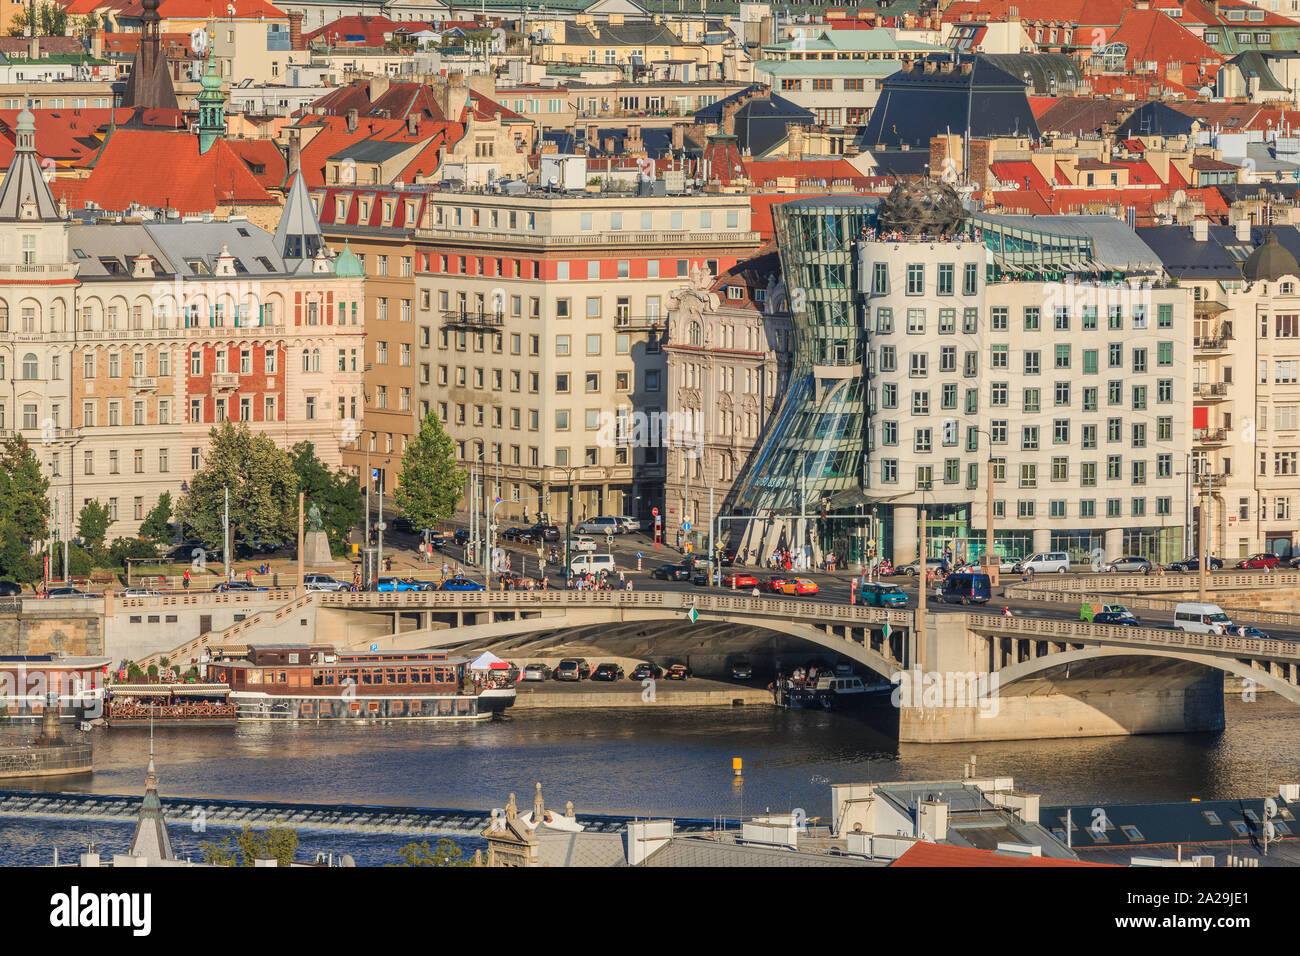 Ausblick auf das Stadtzentrum von Prag. Historische Gebäude aus dem Stadtteil Mala Strana mit dem Fluss Vltava und die Straßen, die Brücken, Schiffe an der sho Stockfoto